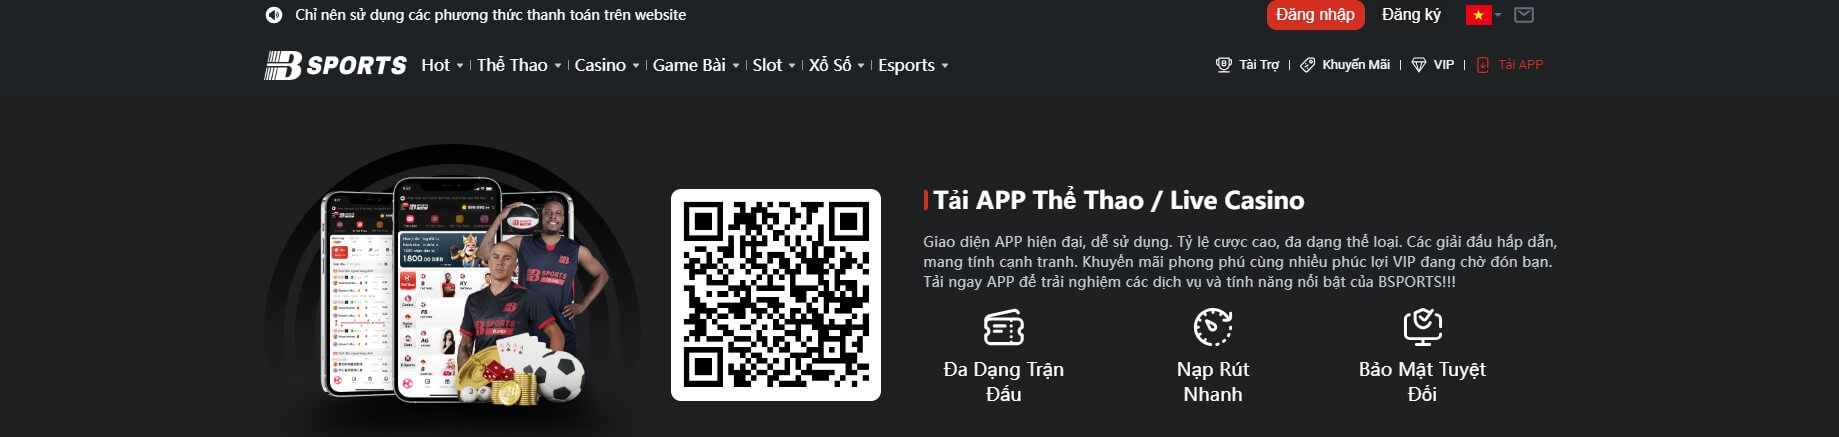 BTY521 - Link đăng nhập chính chủ, tải app IOS/Android APK - Ảnh 7